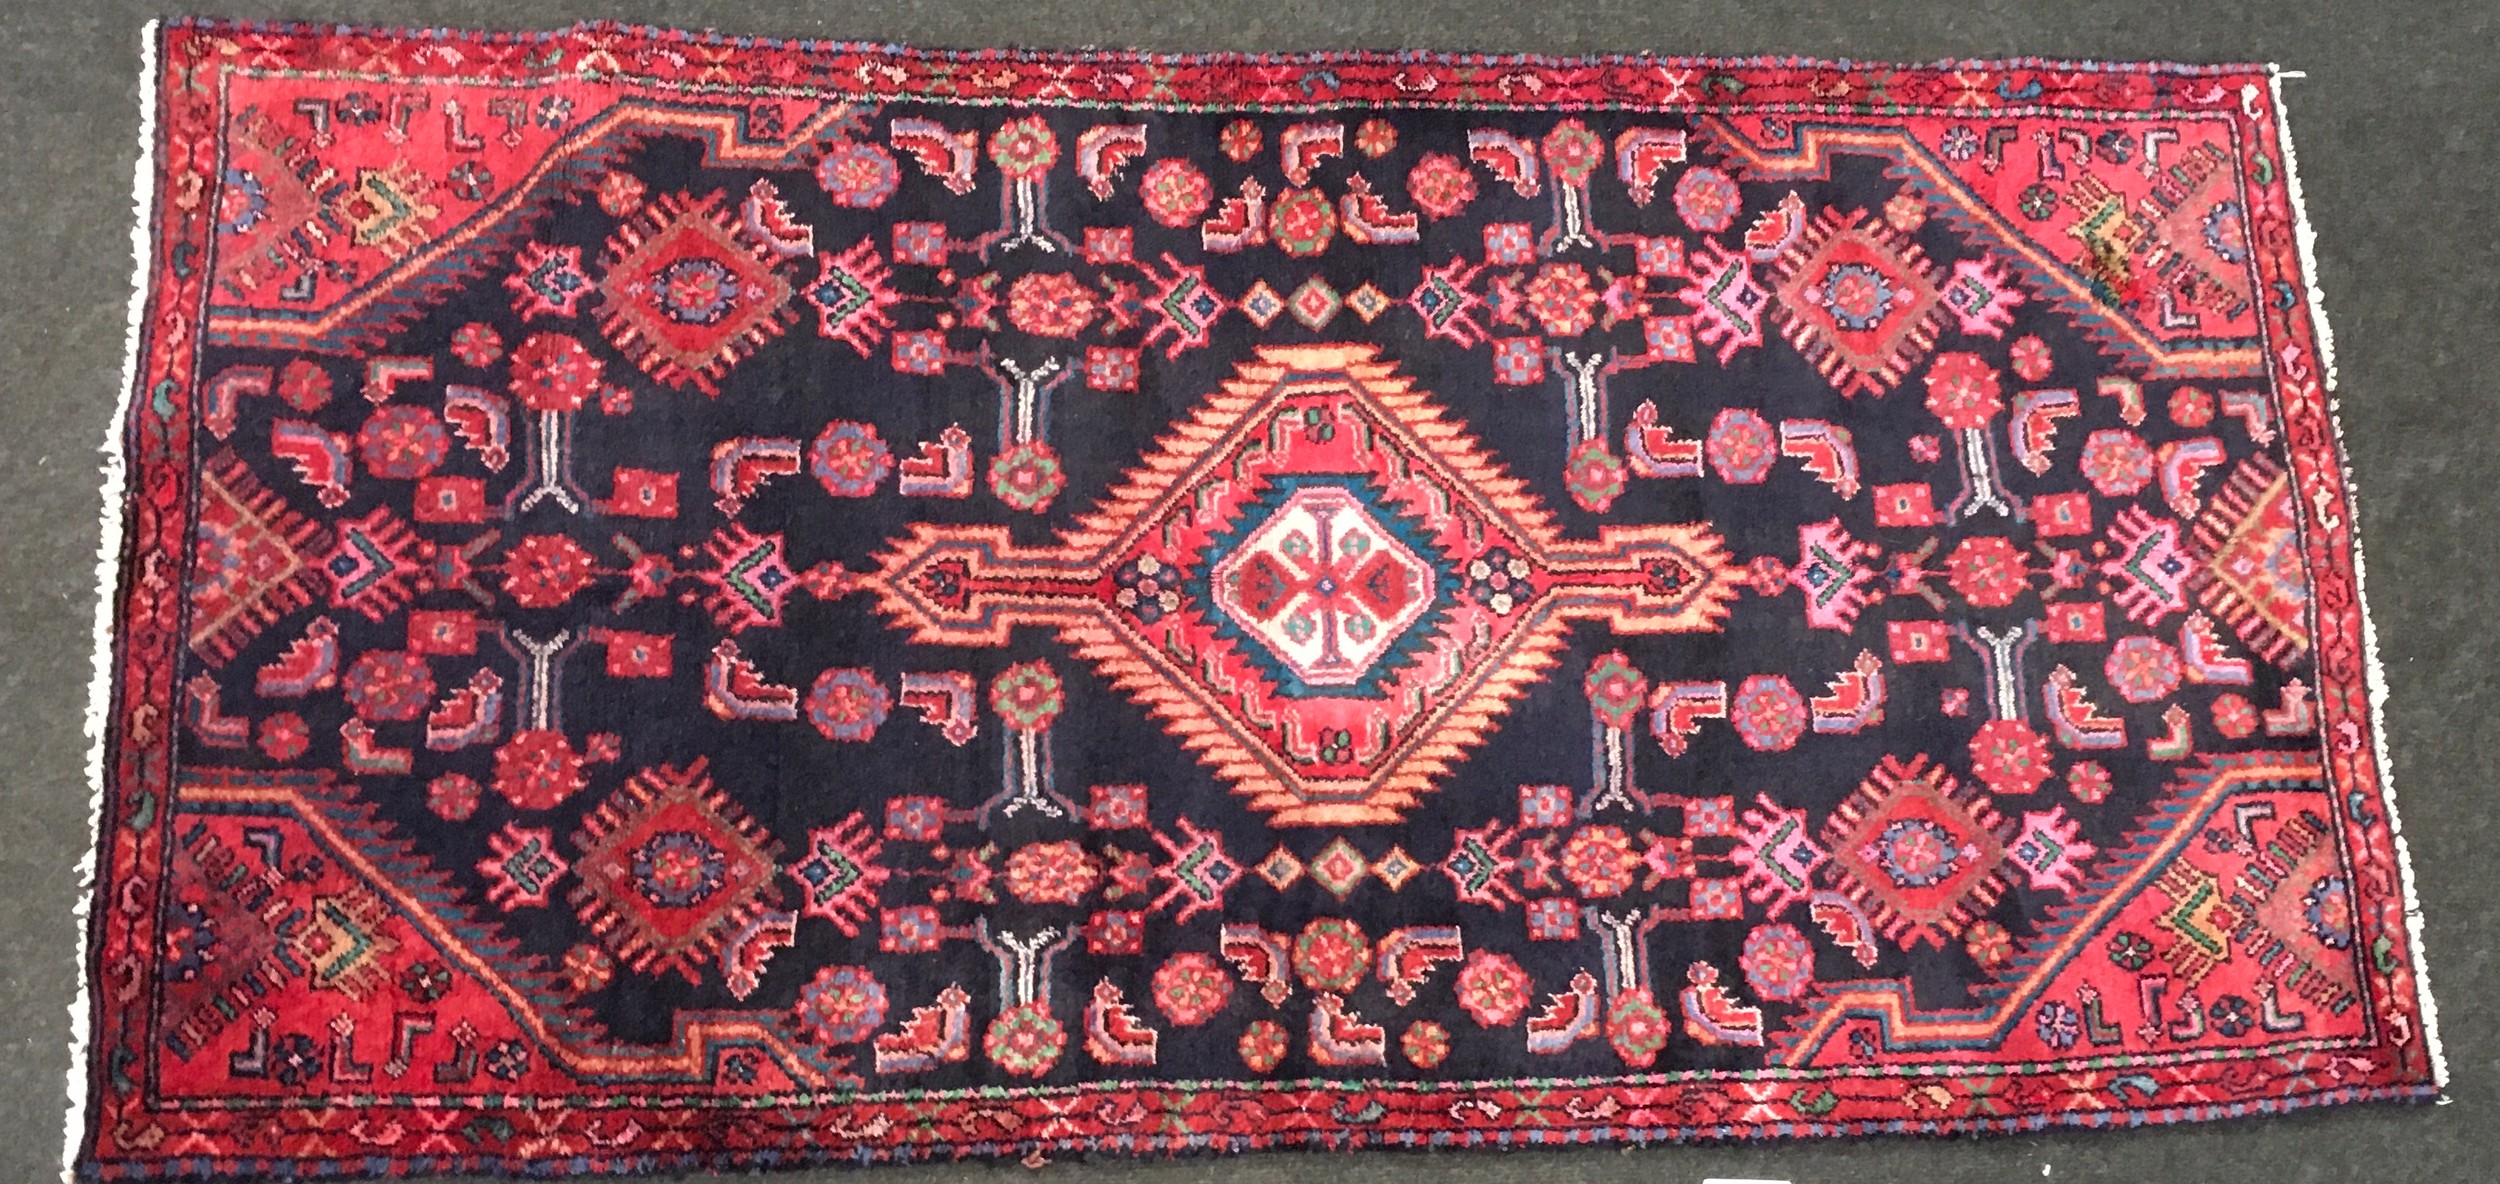 Vintage Hamedan medallion rug. Blue/red. 66" x 32" ref sh44 - Image 2 of 2